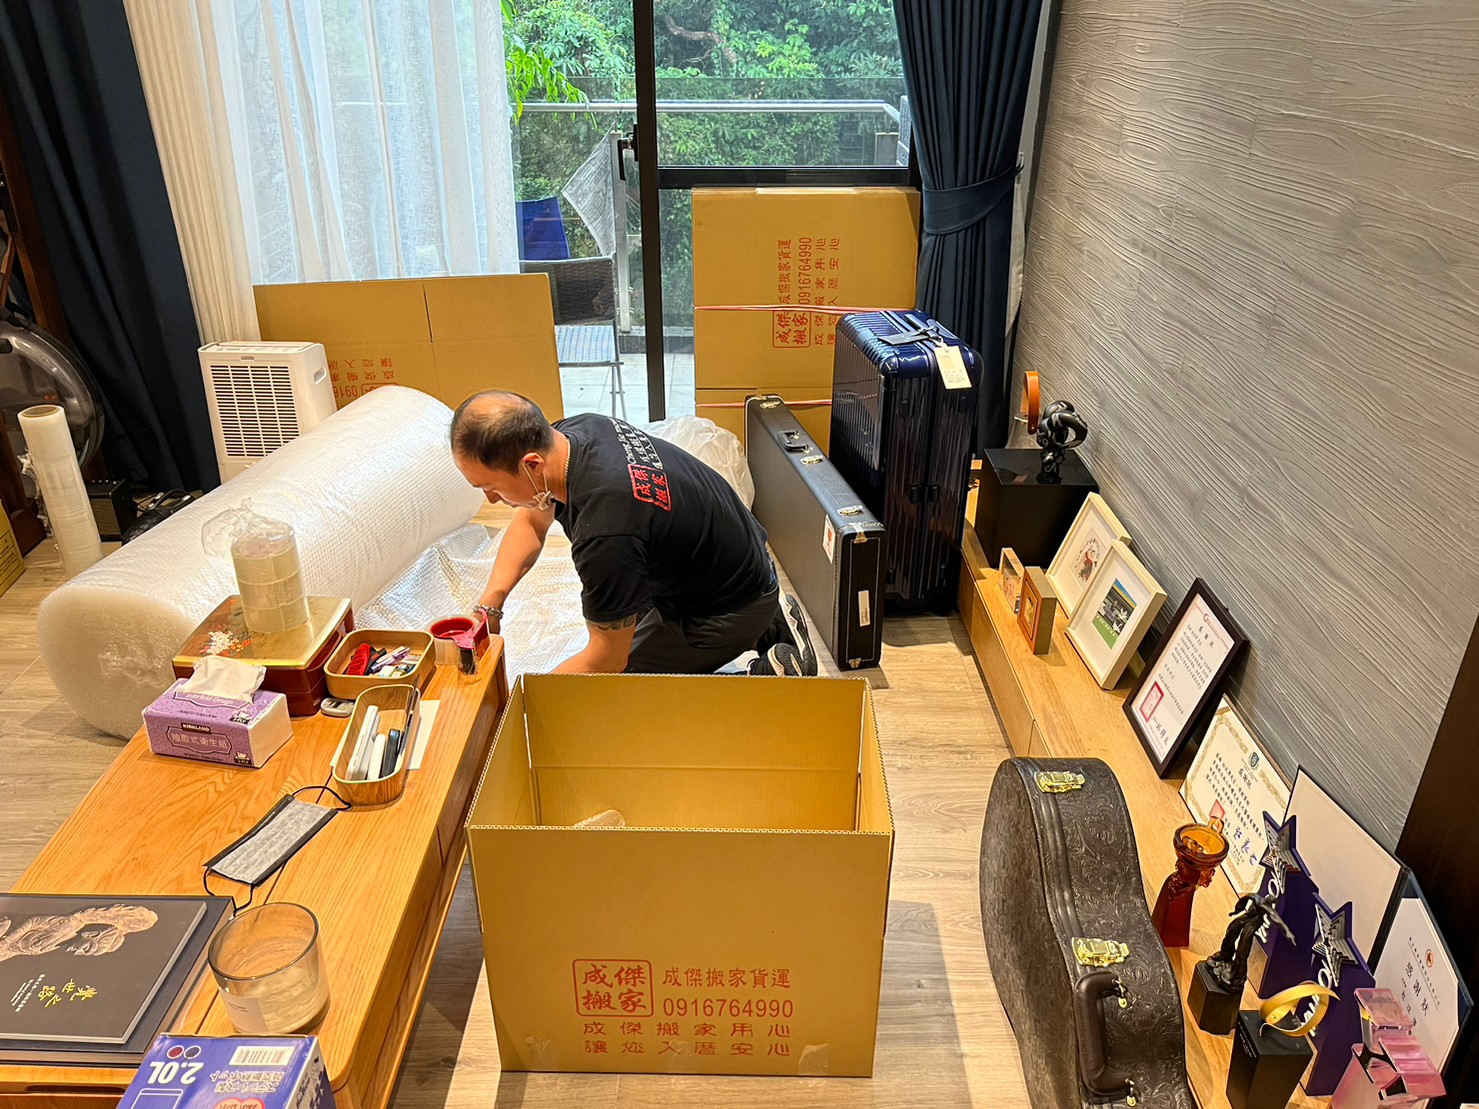 台北搬家公司推薦，成傑搬家，家庭搬家/套房搬家價格公開透明，從搬家到廢棄物清運都可以協助處理，搬家公司推薦。